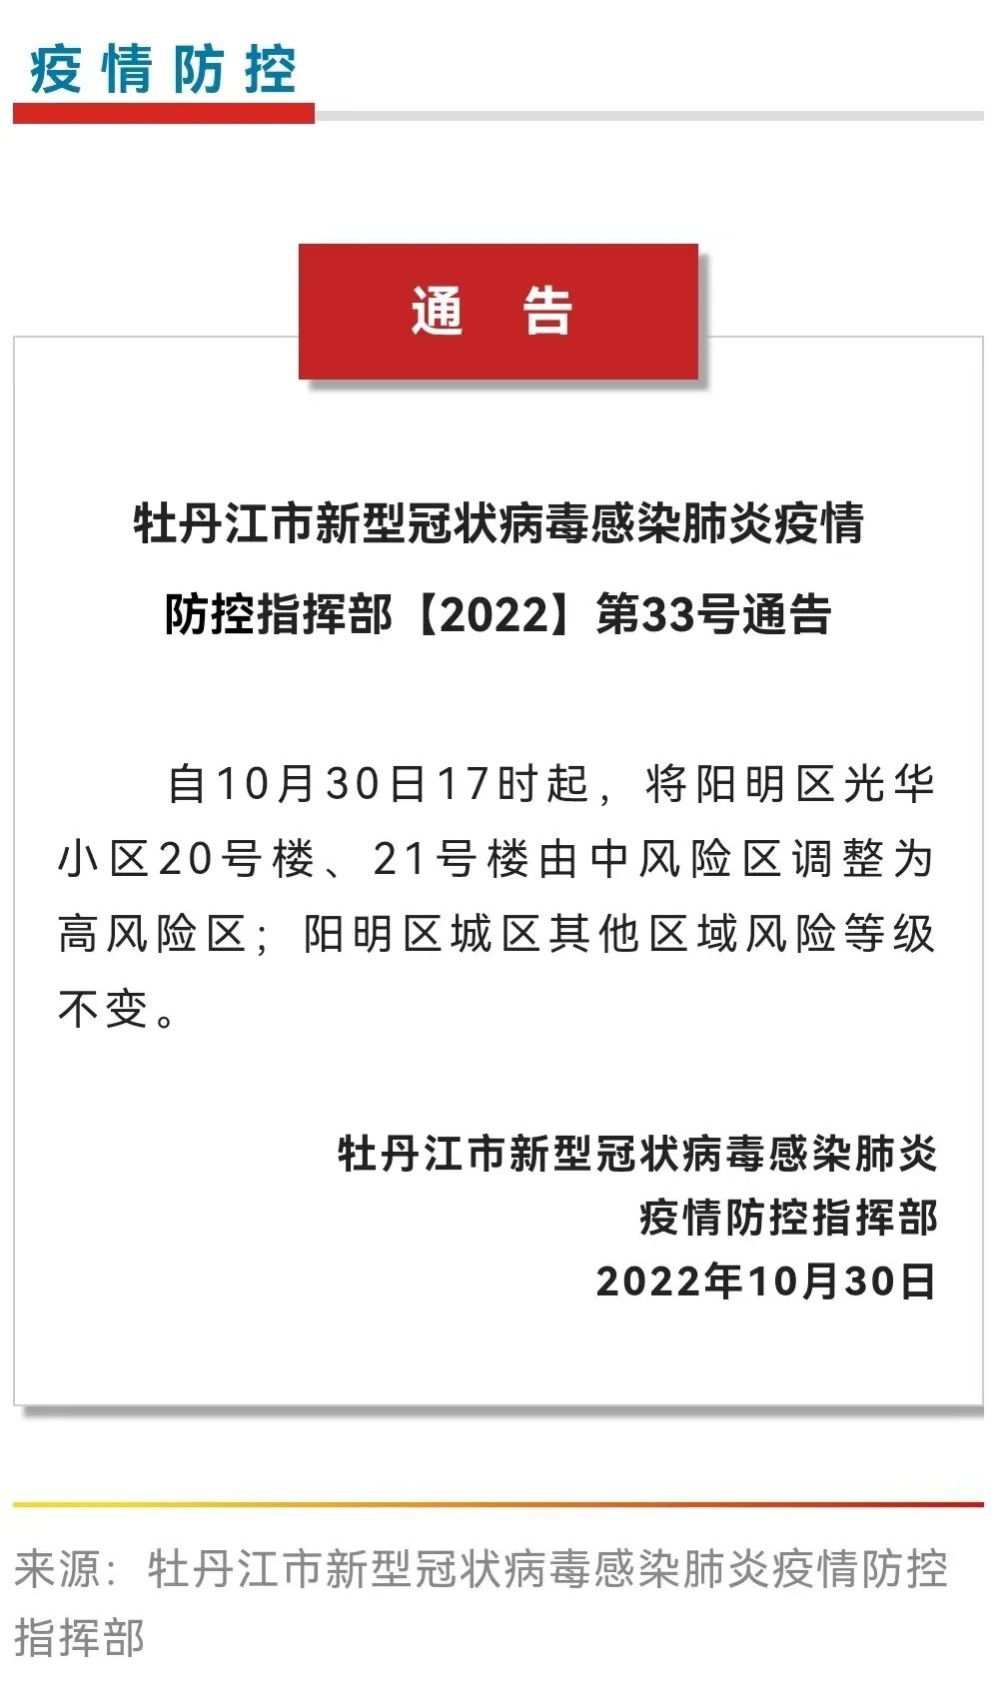 牡丹江市新型冠状病毒感染肺炎疫情防控指挥部2022第33号通告